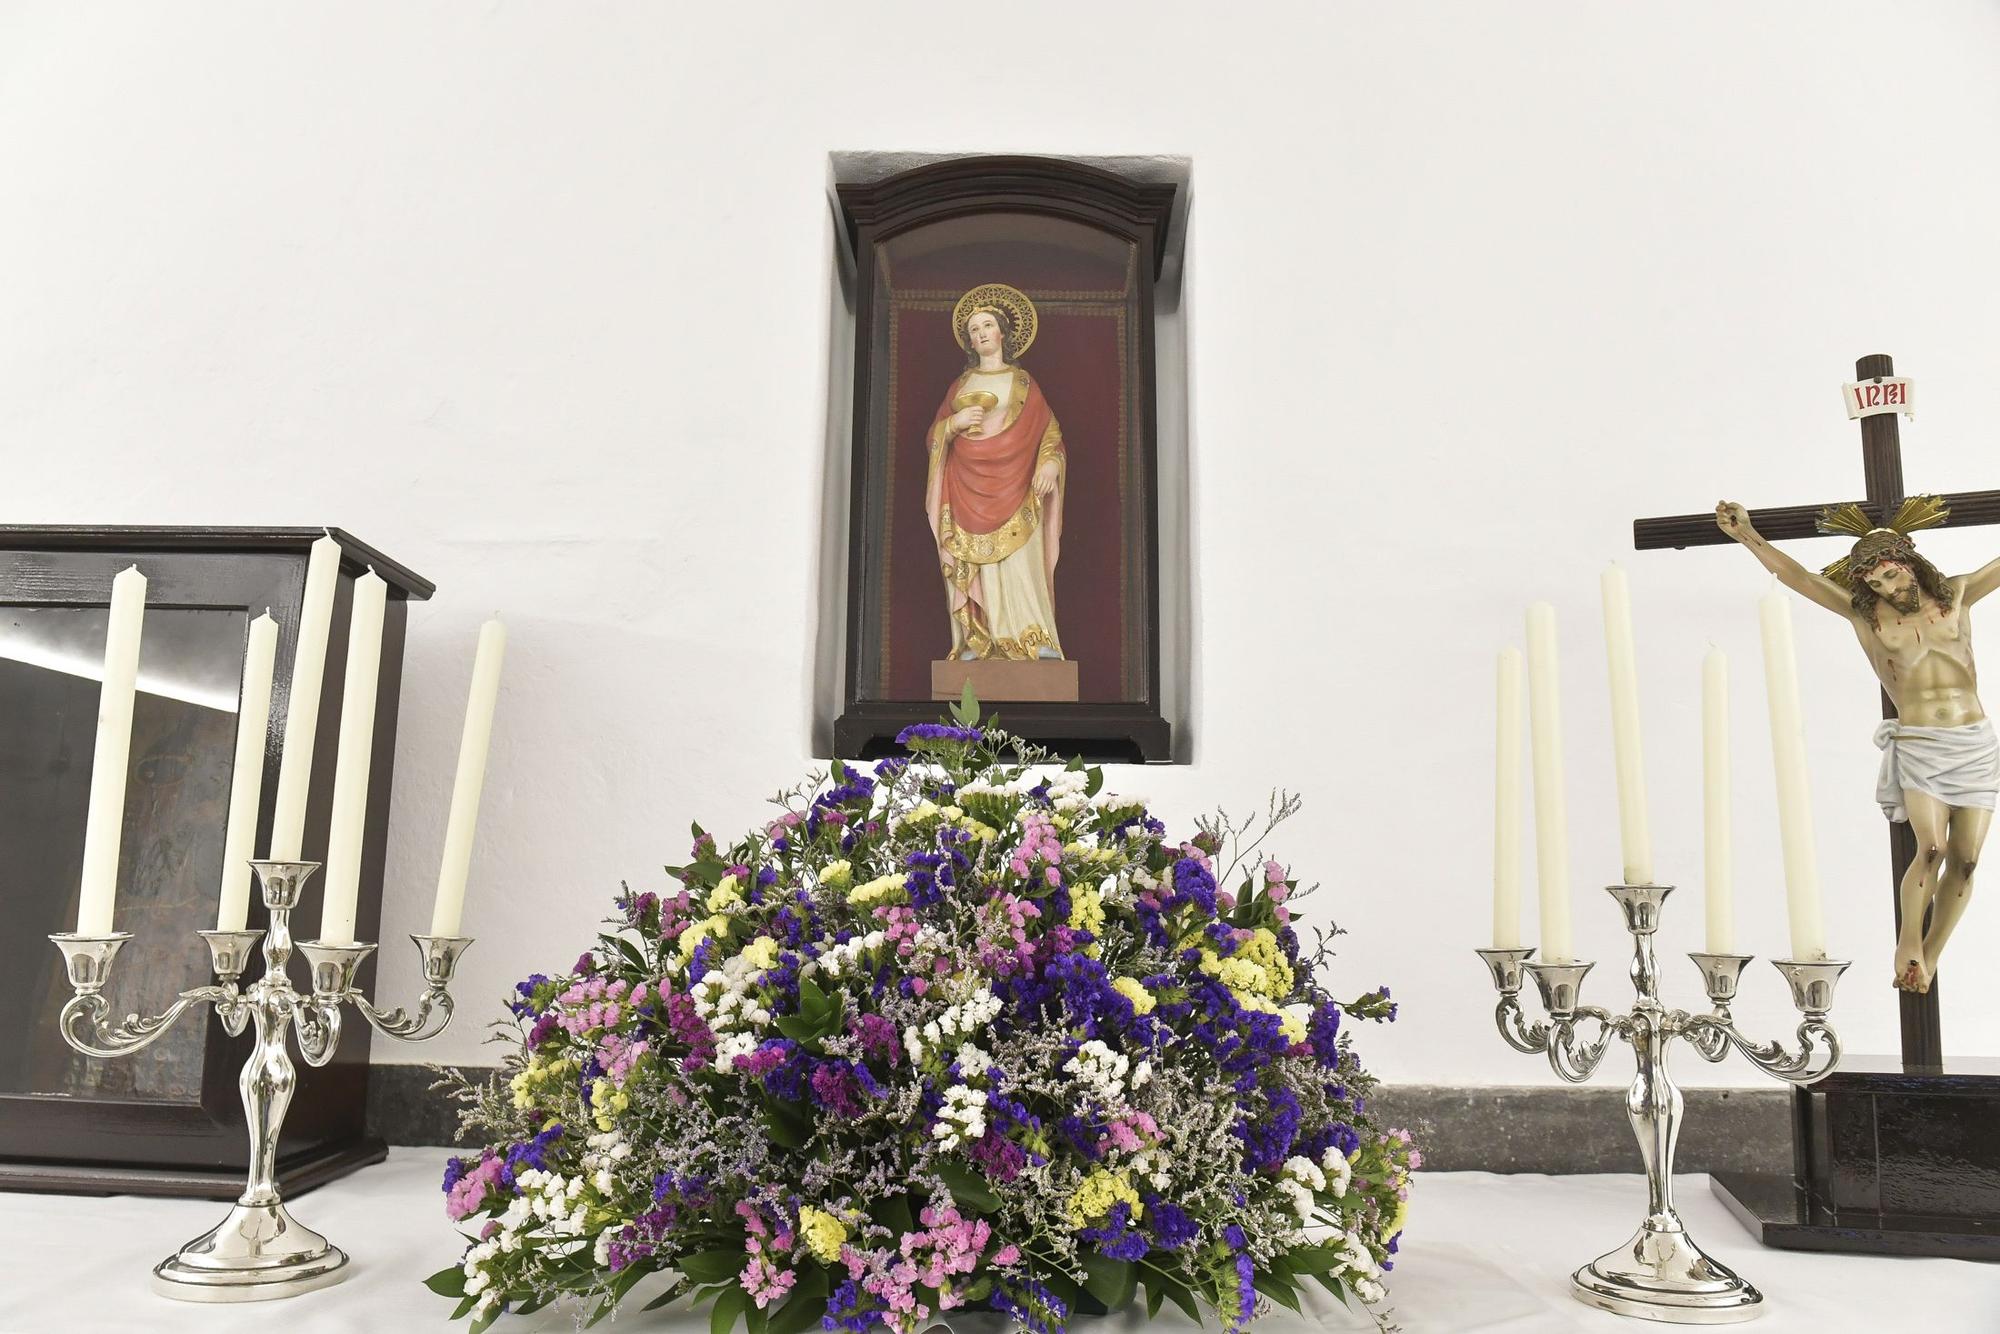 Inauguración de la Ermita de Santa Águeda tras obras de reforma